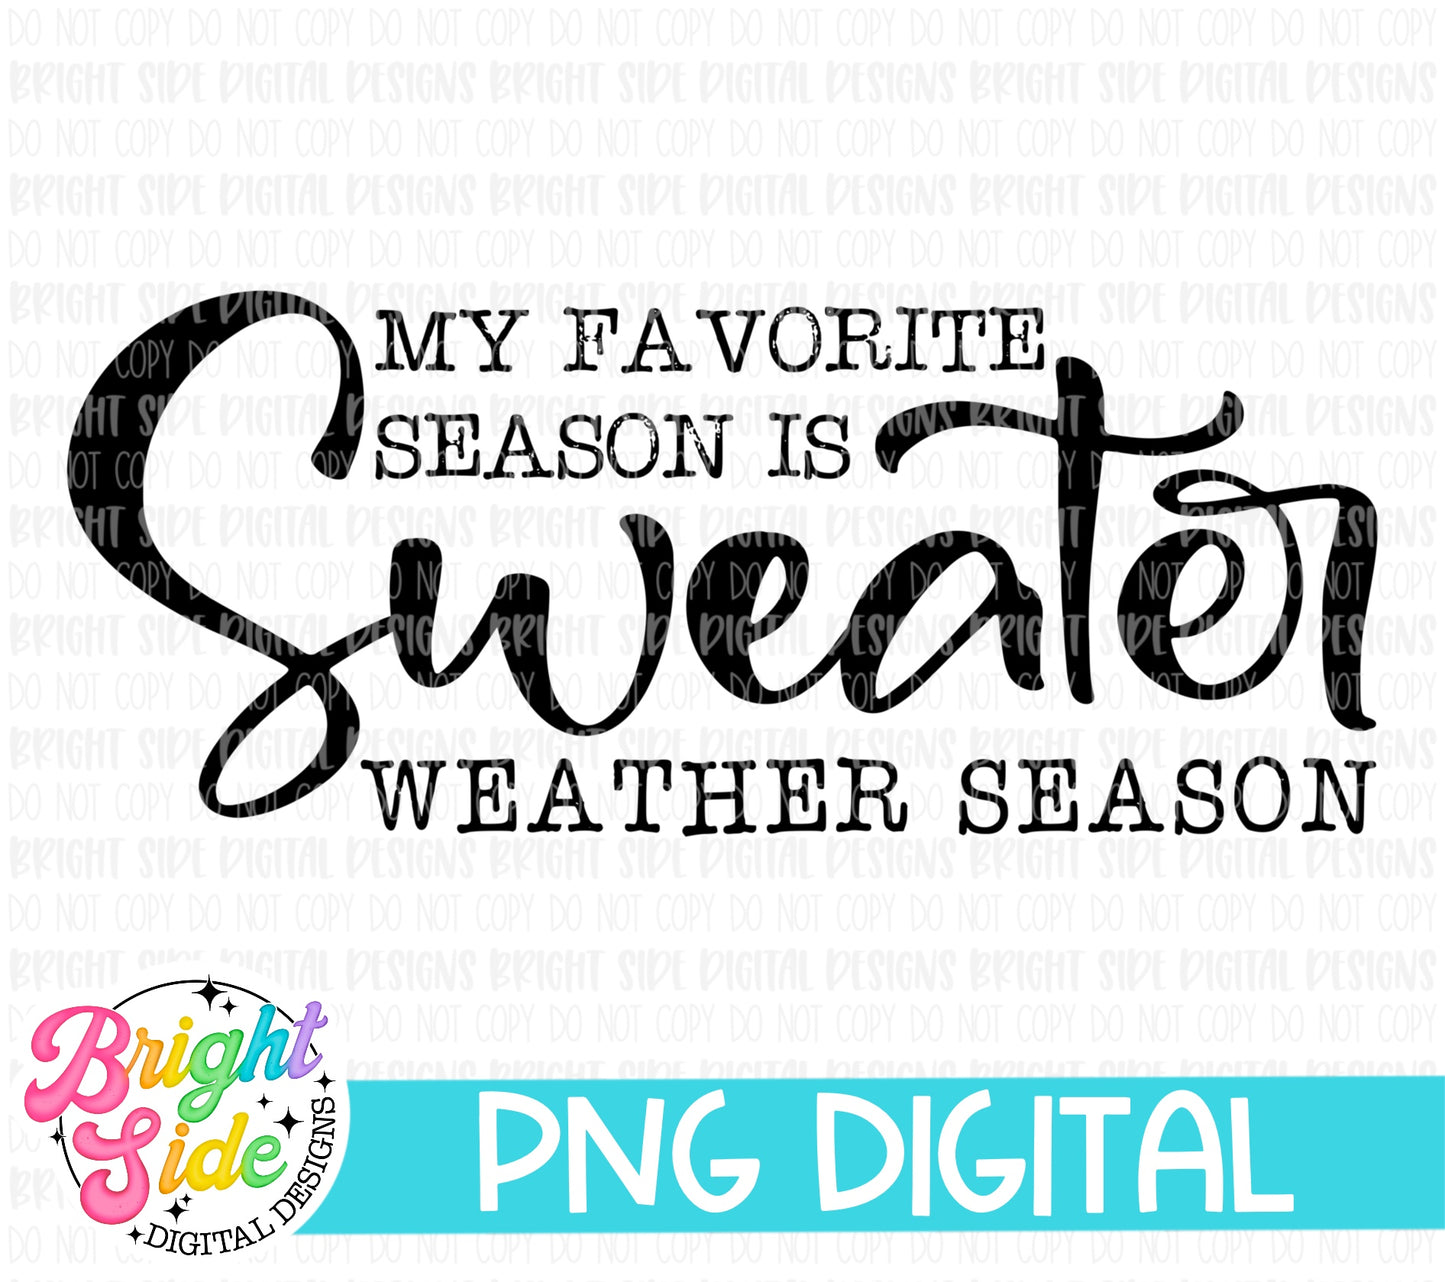 My Favorite Season is Sweater Weather Season